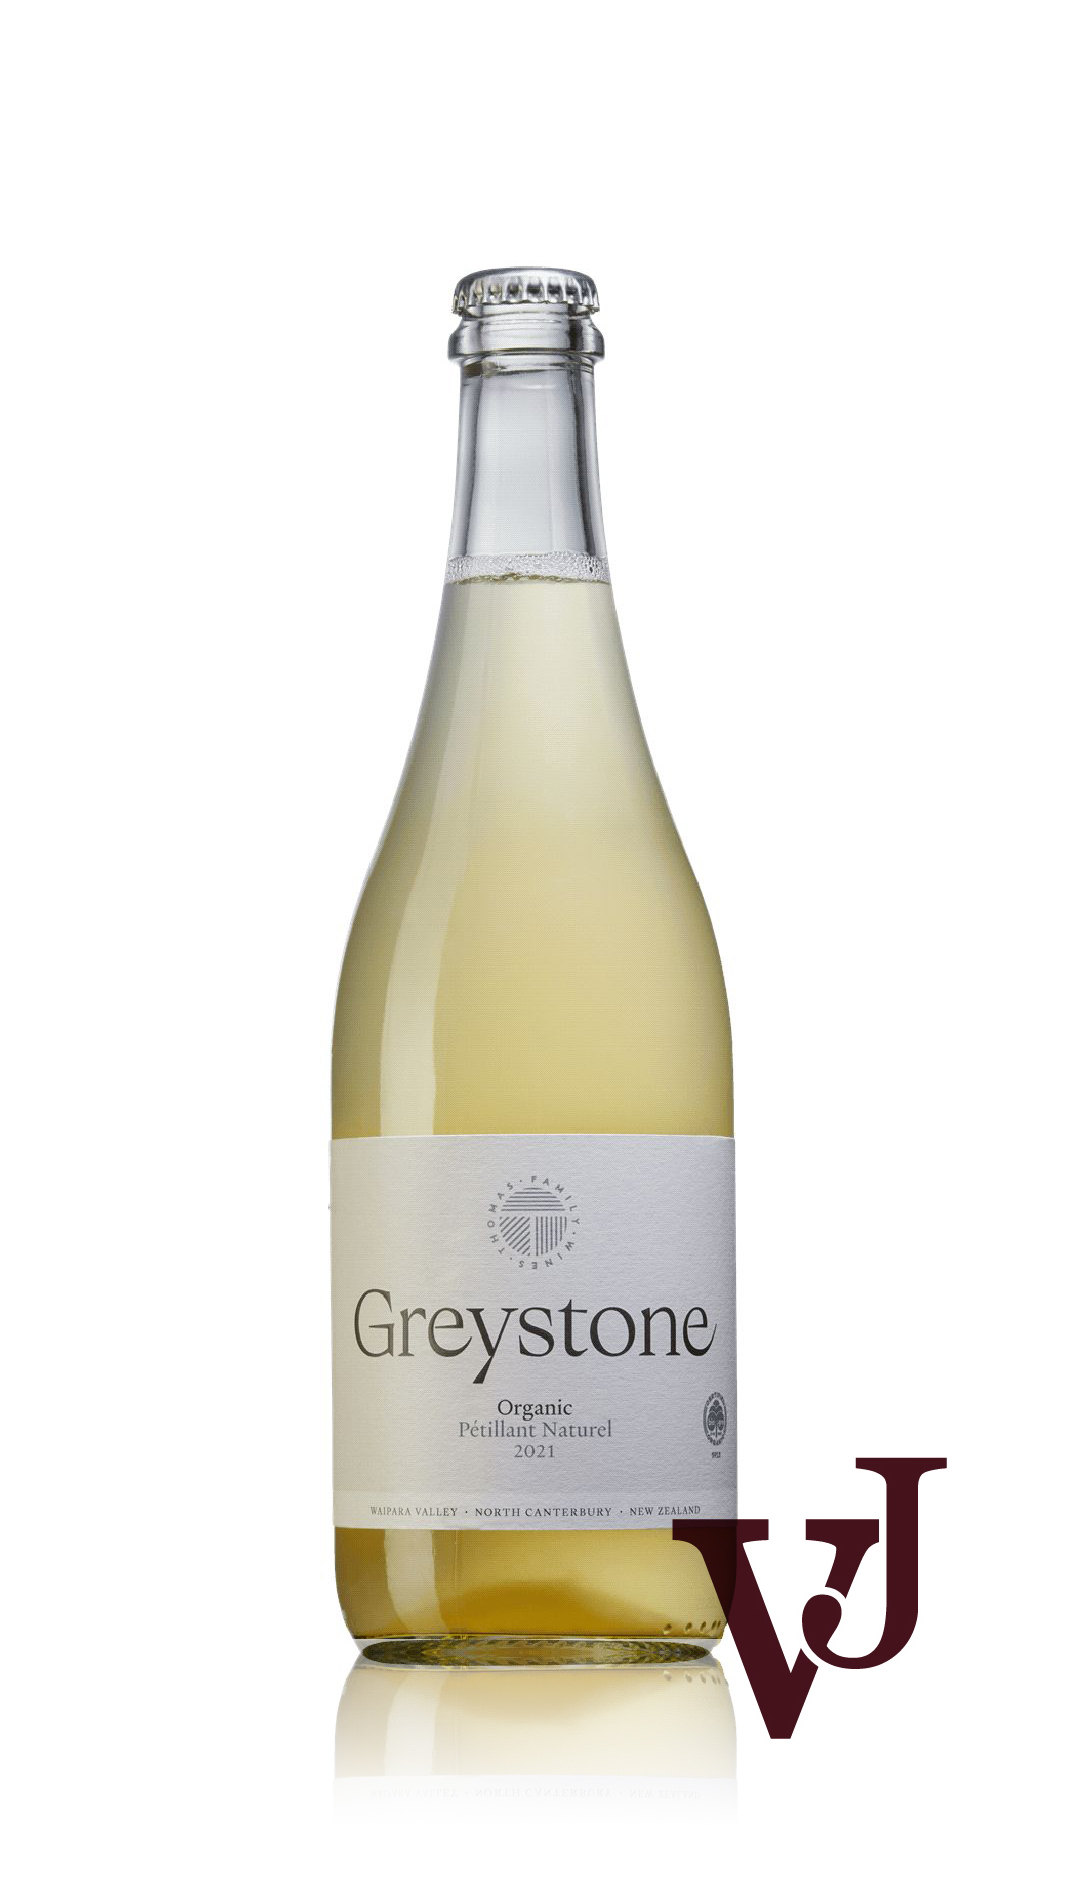 Mousserande Vin - Greystone artikel nummer 9462901 från producenten Greystone Wines från området Nya Zeeland